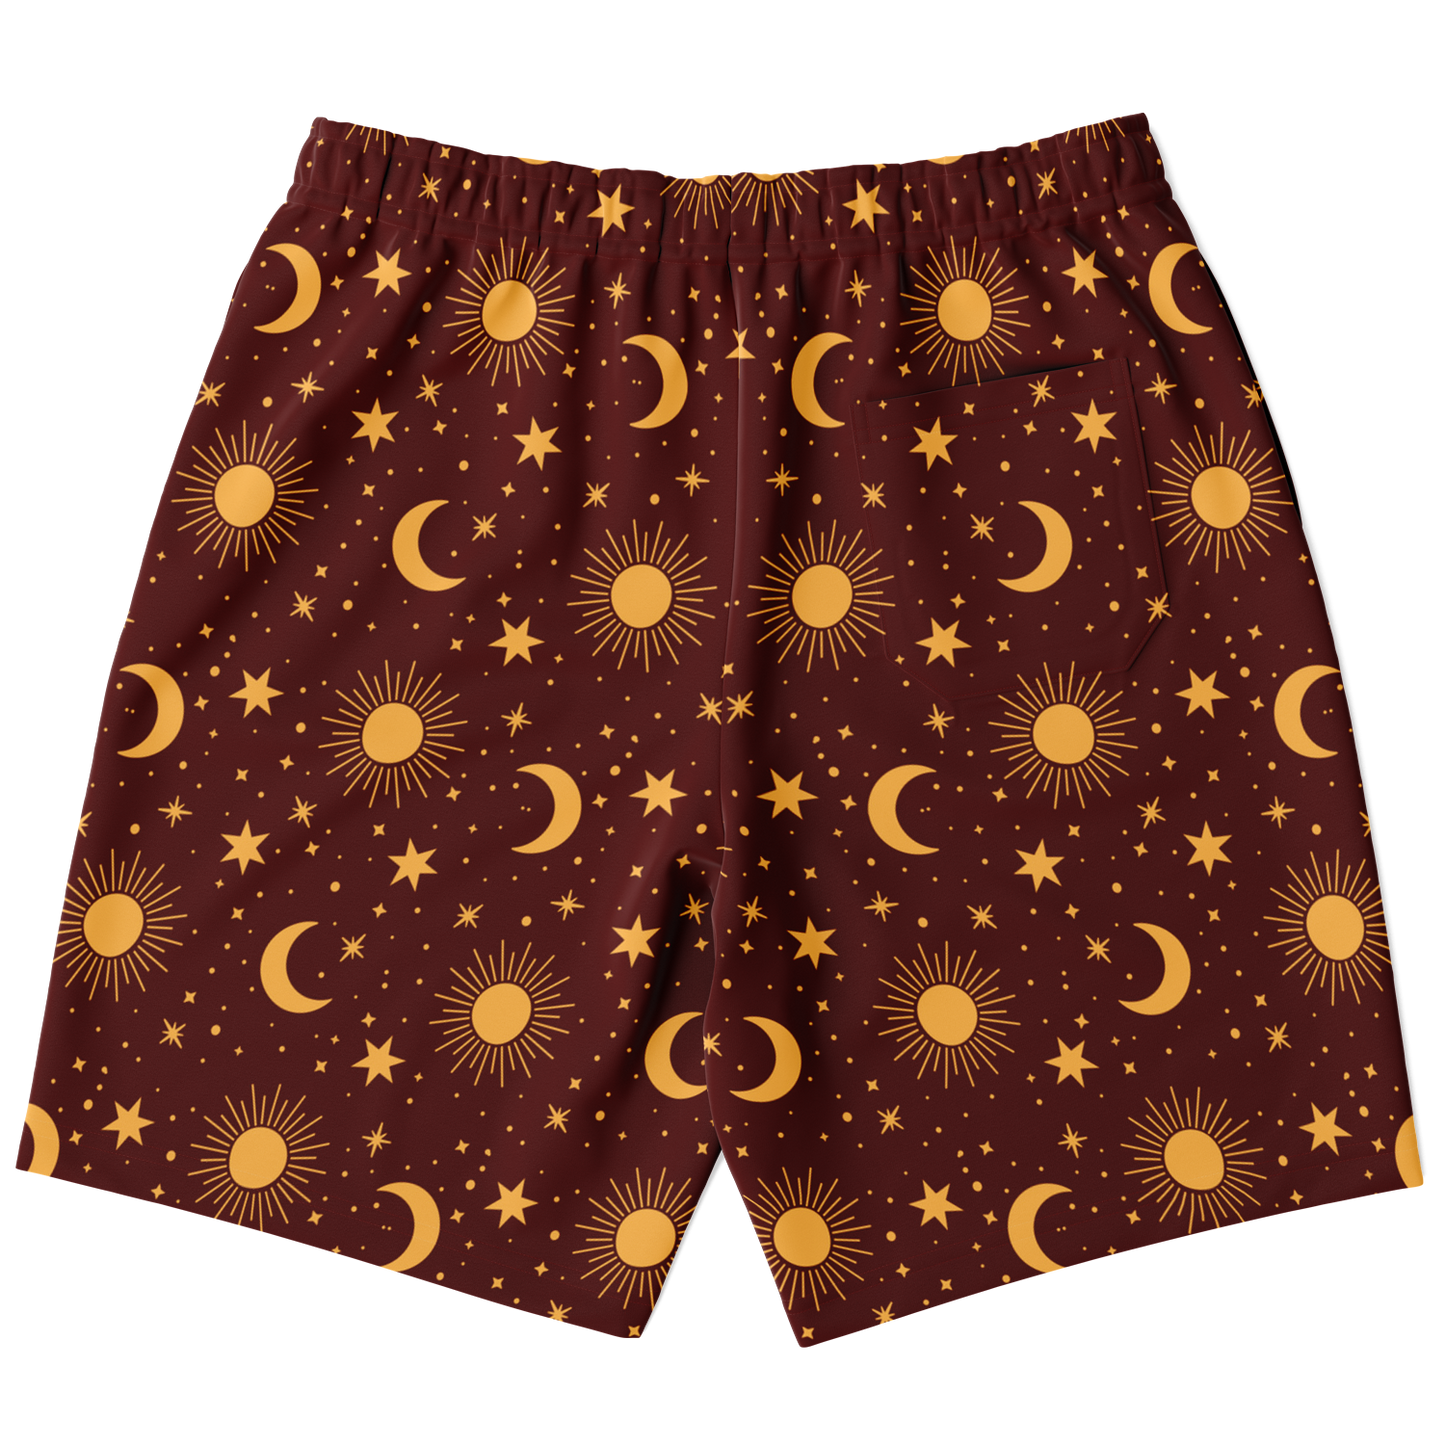 <alt.Stellar Shine Men's Shorts - Taufaa>